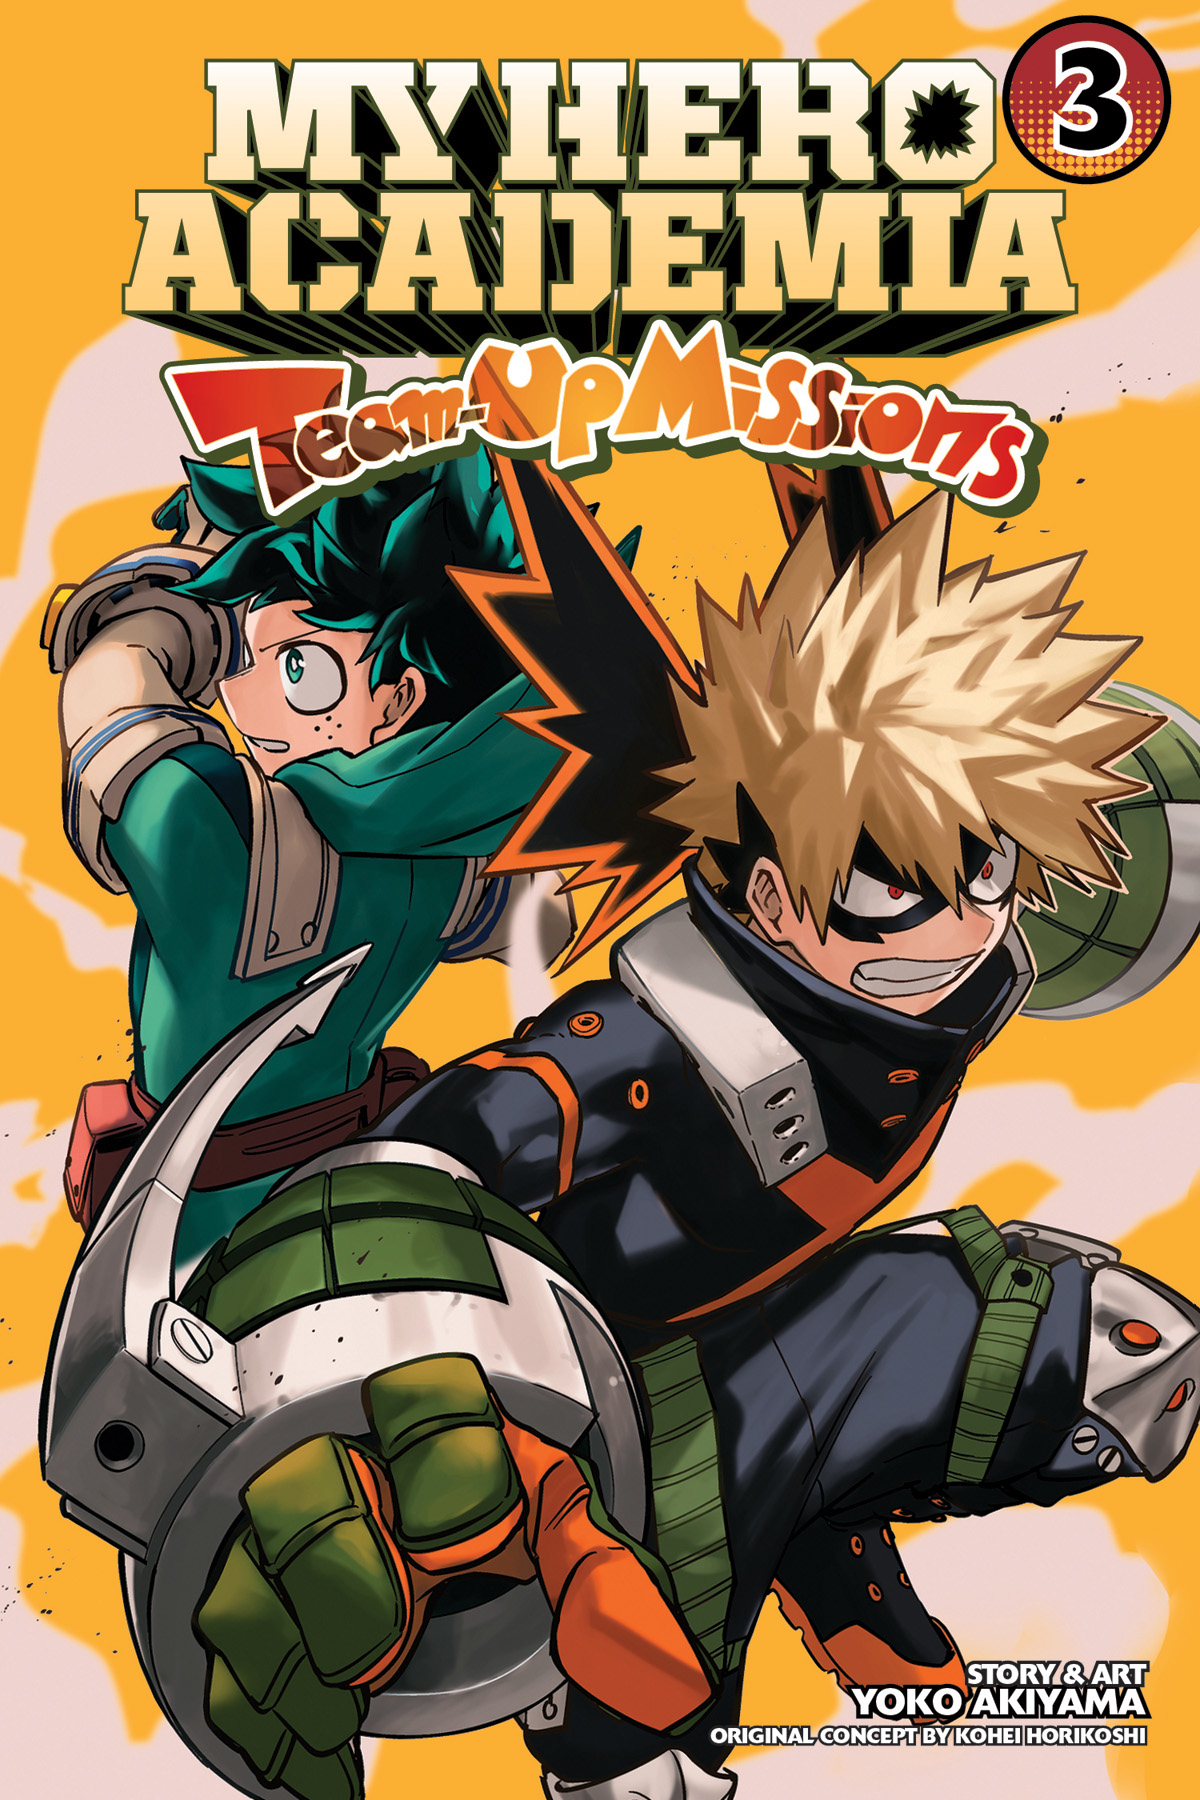 My Hero Academia Team-Up Missions Manga Volume 3